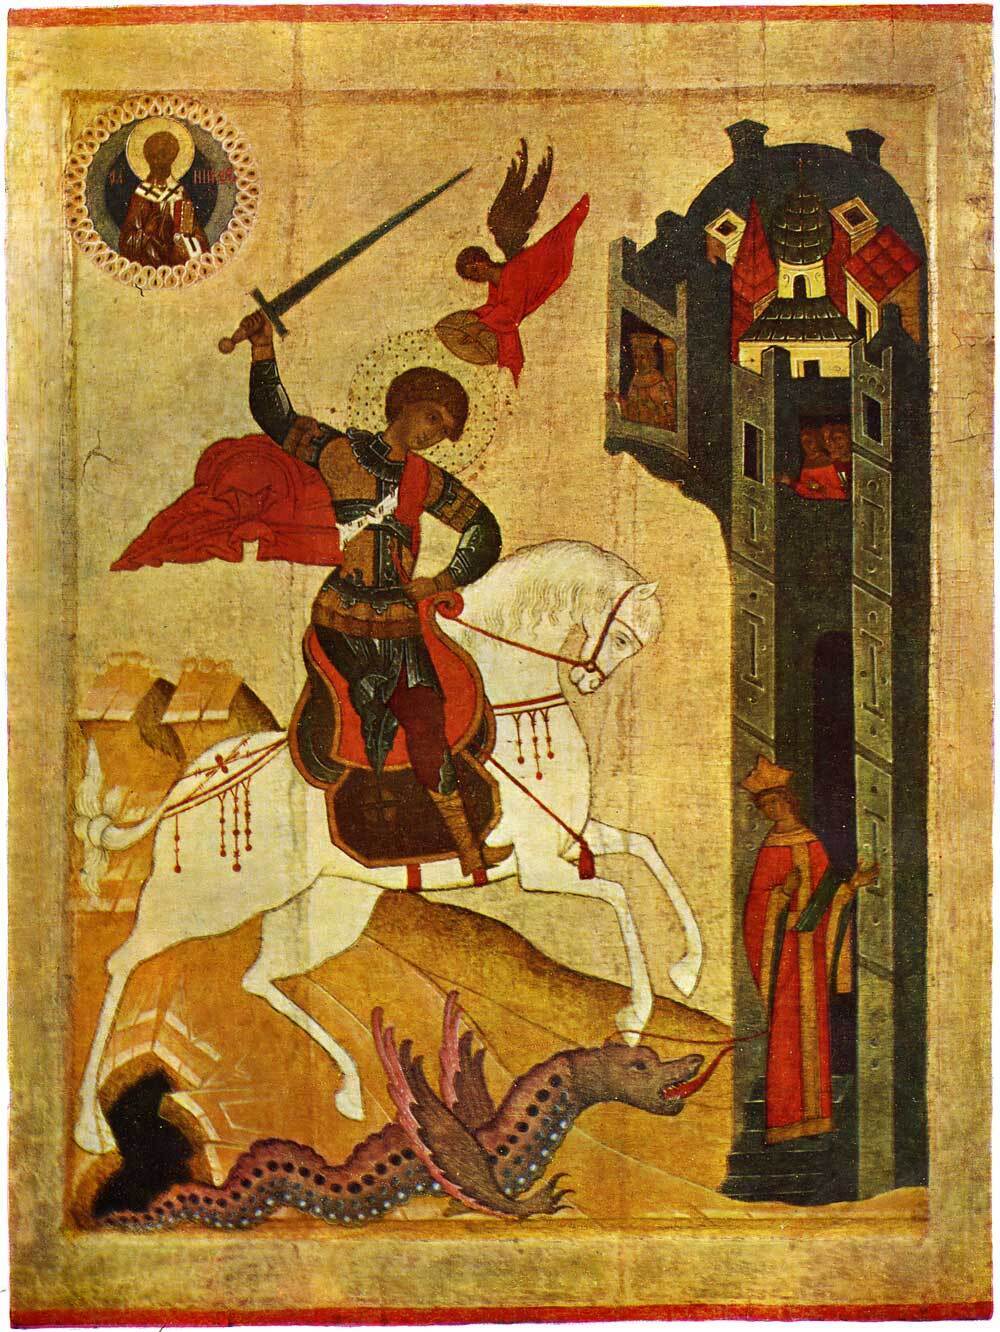 6 травня для всіх православних вірян настає День святого Георгія Побідоносця